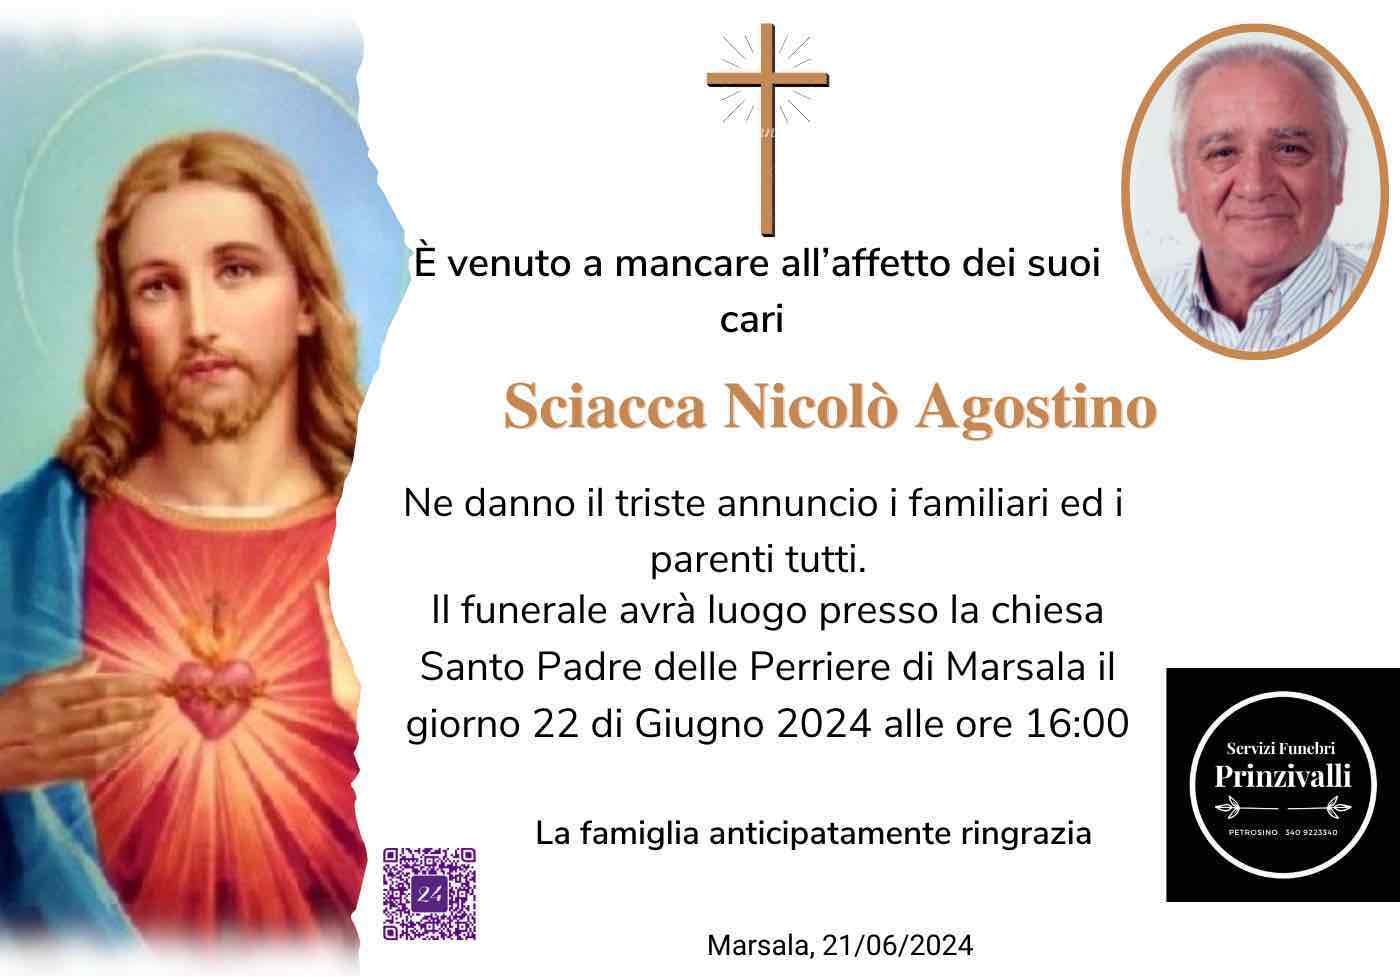 Nicolò Agostino Sciacca